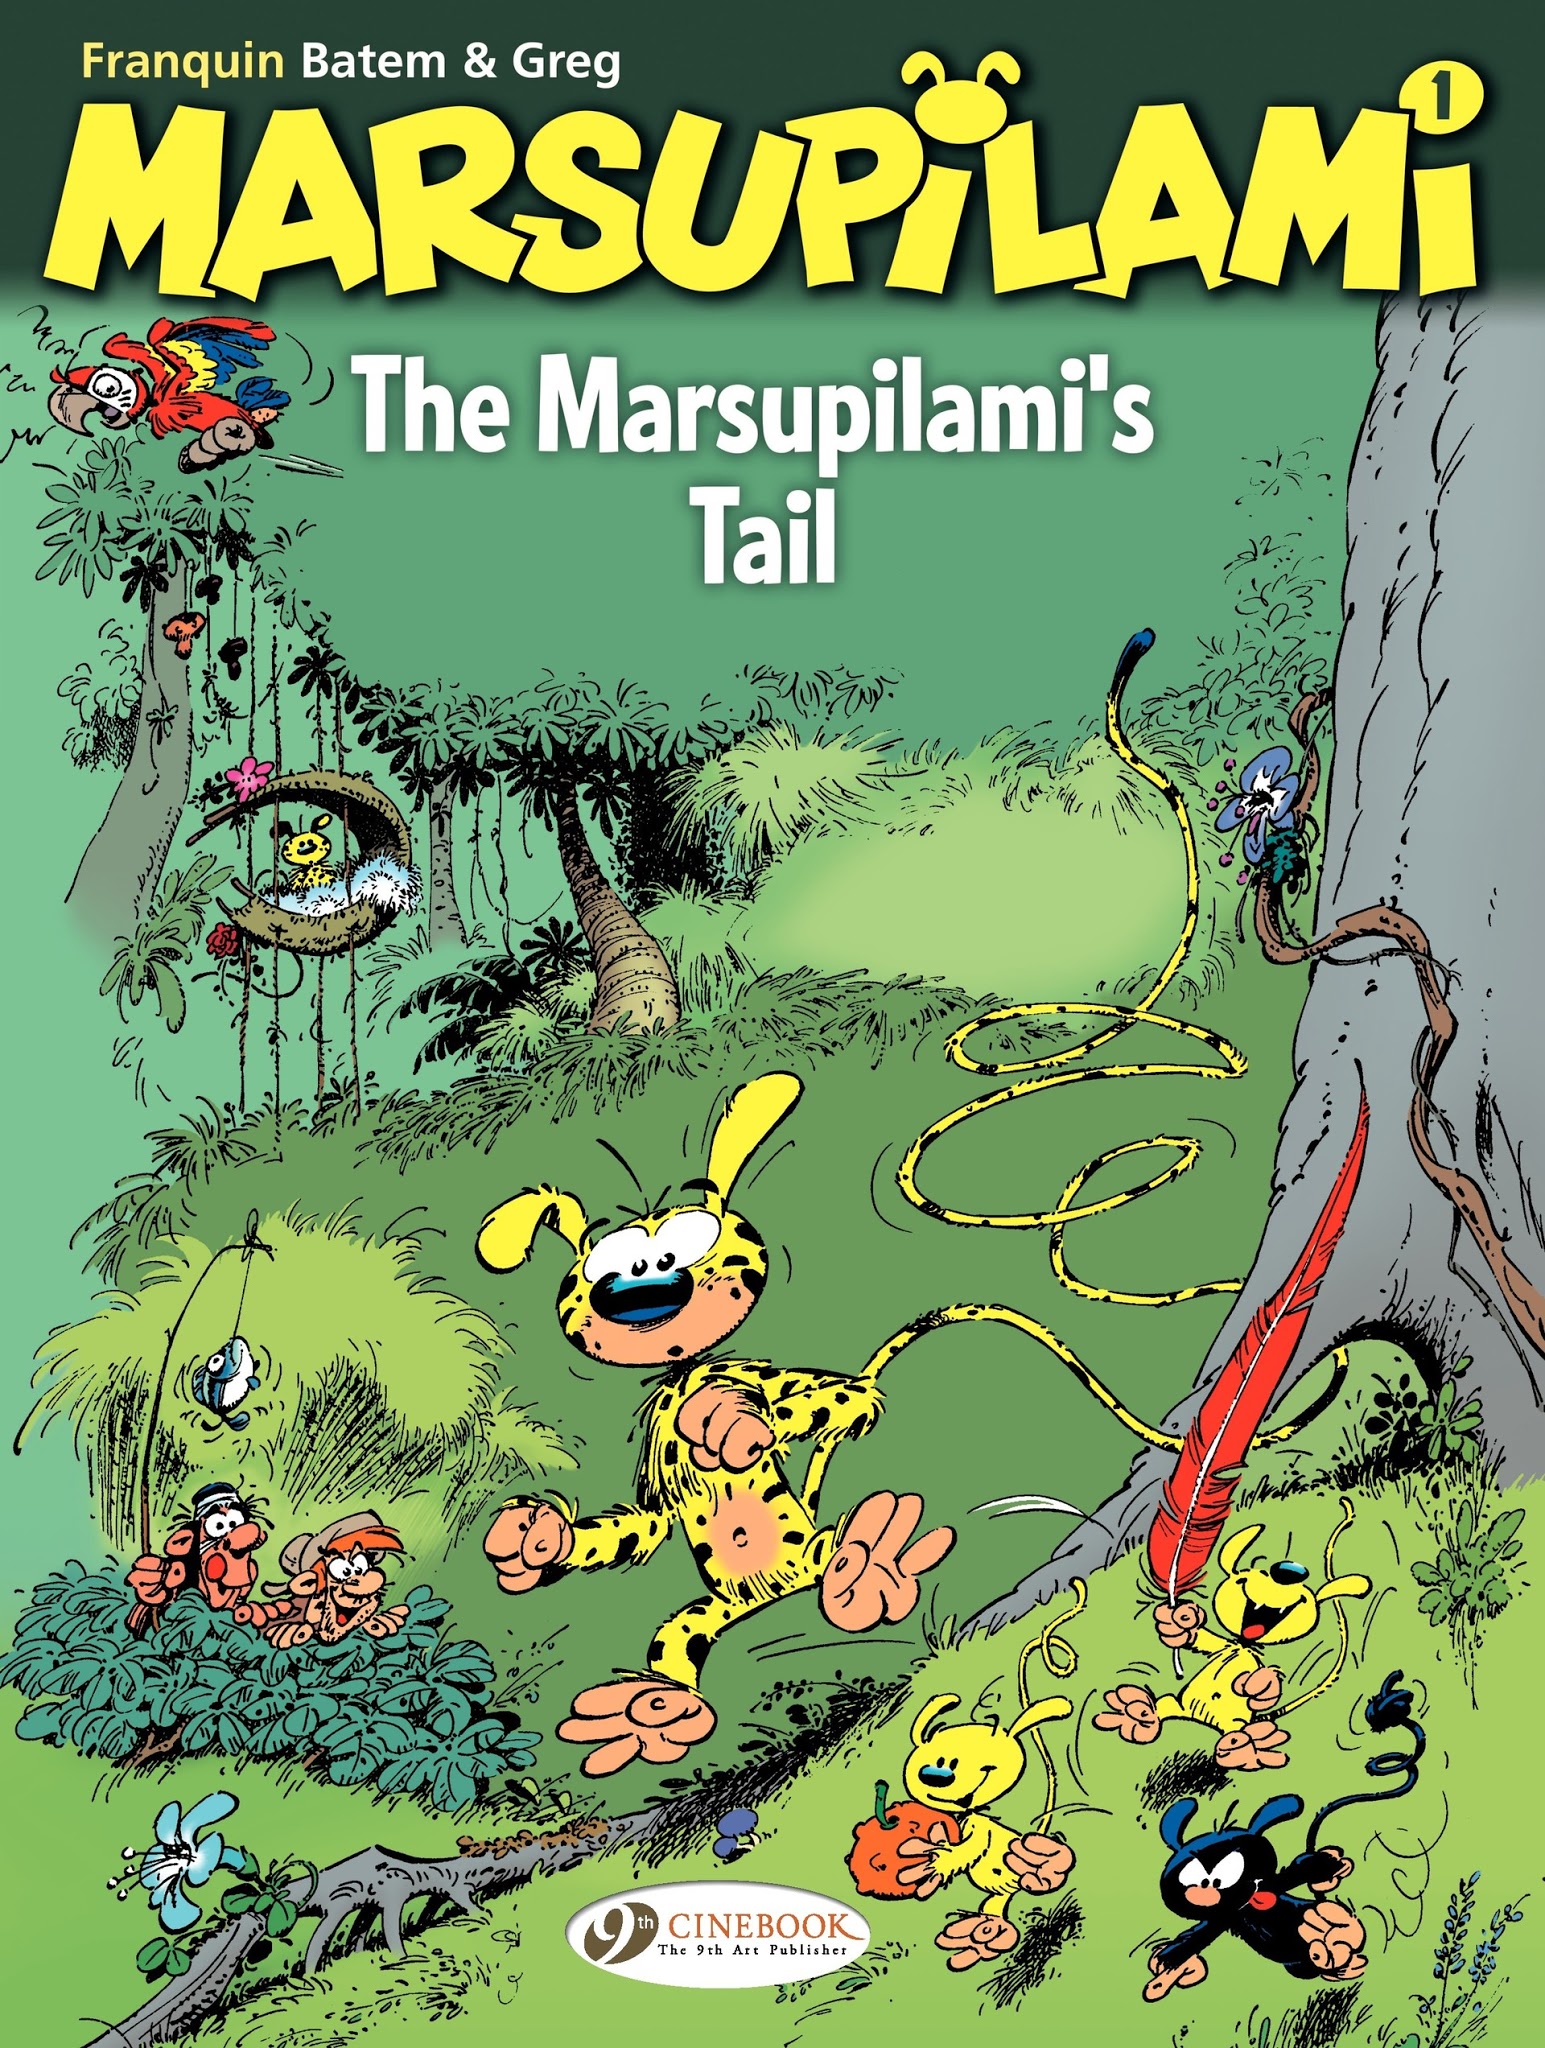 Read online Marsupilami comic -  Issue #1 - 1